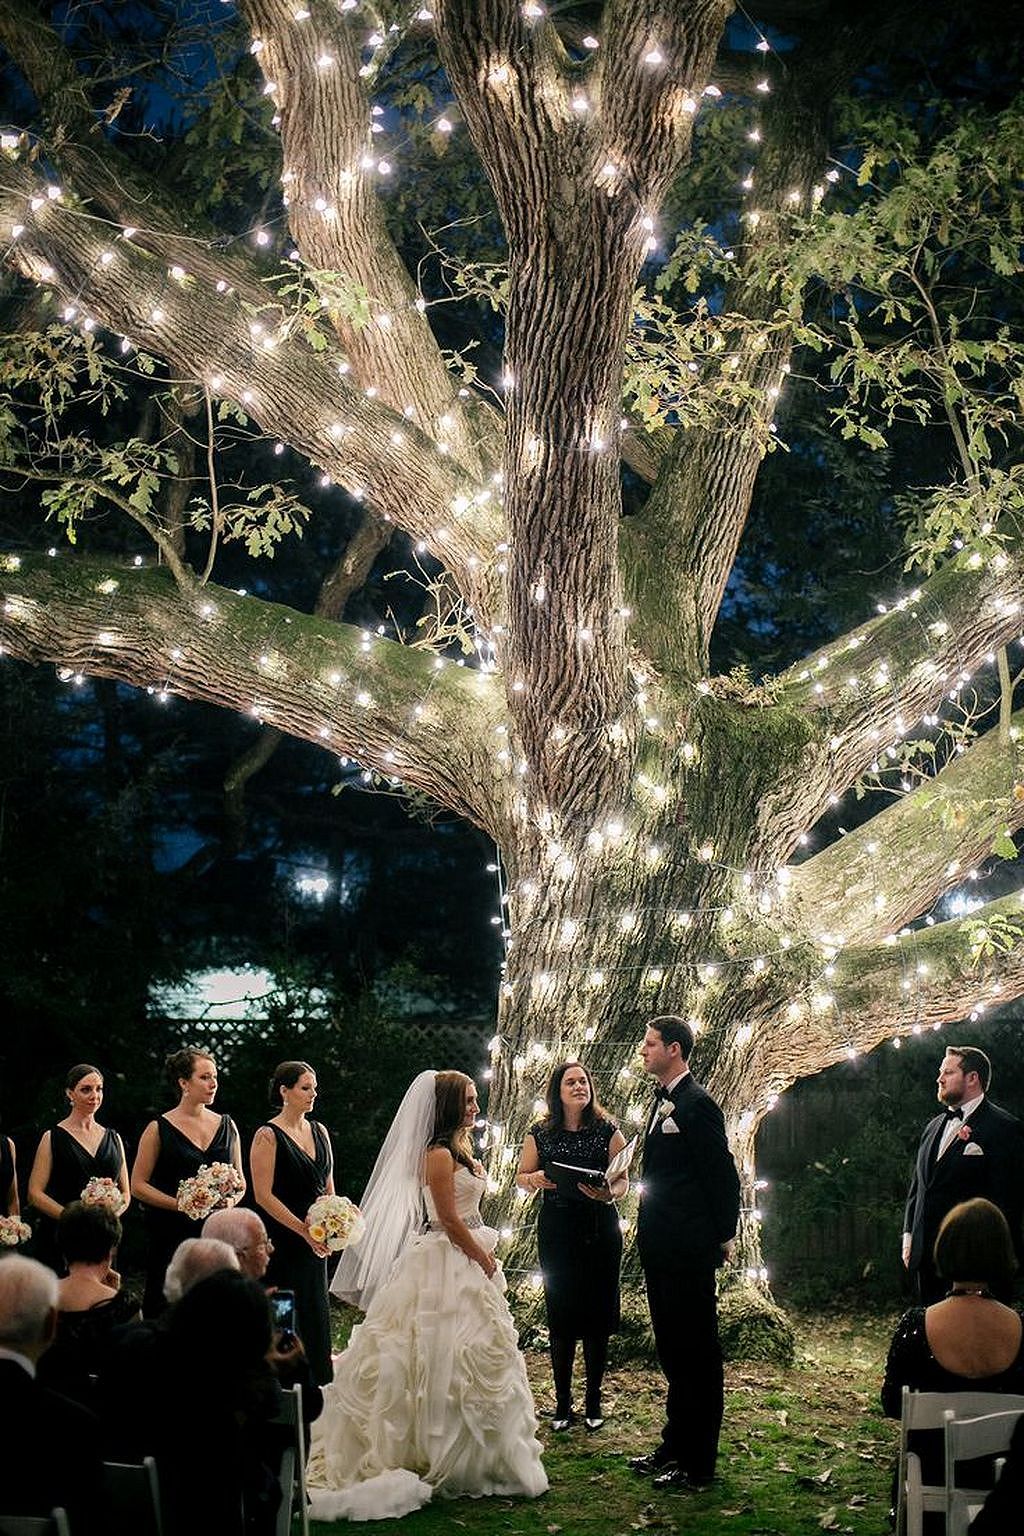 décoration lumineuse mariage cérémonie à l'extérieur guirlande autour de l'arbre